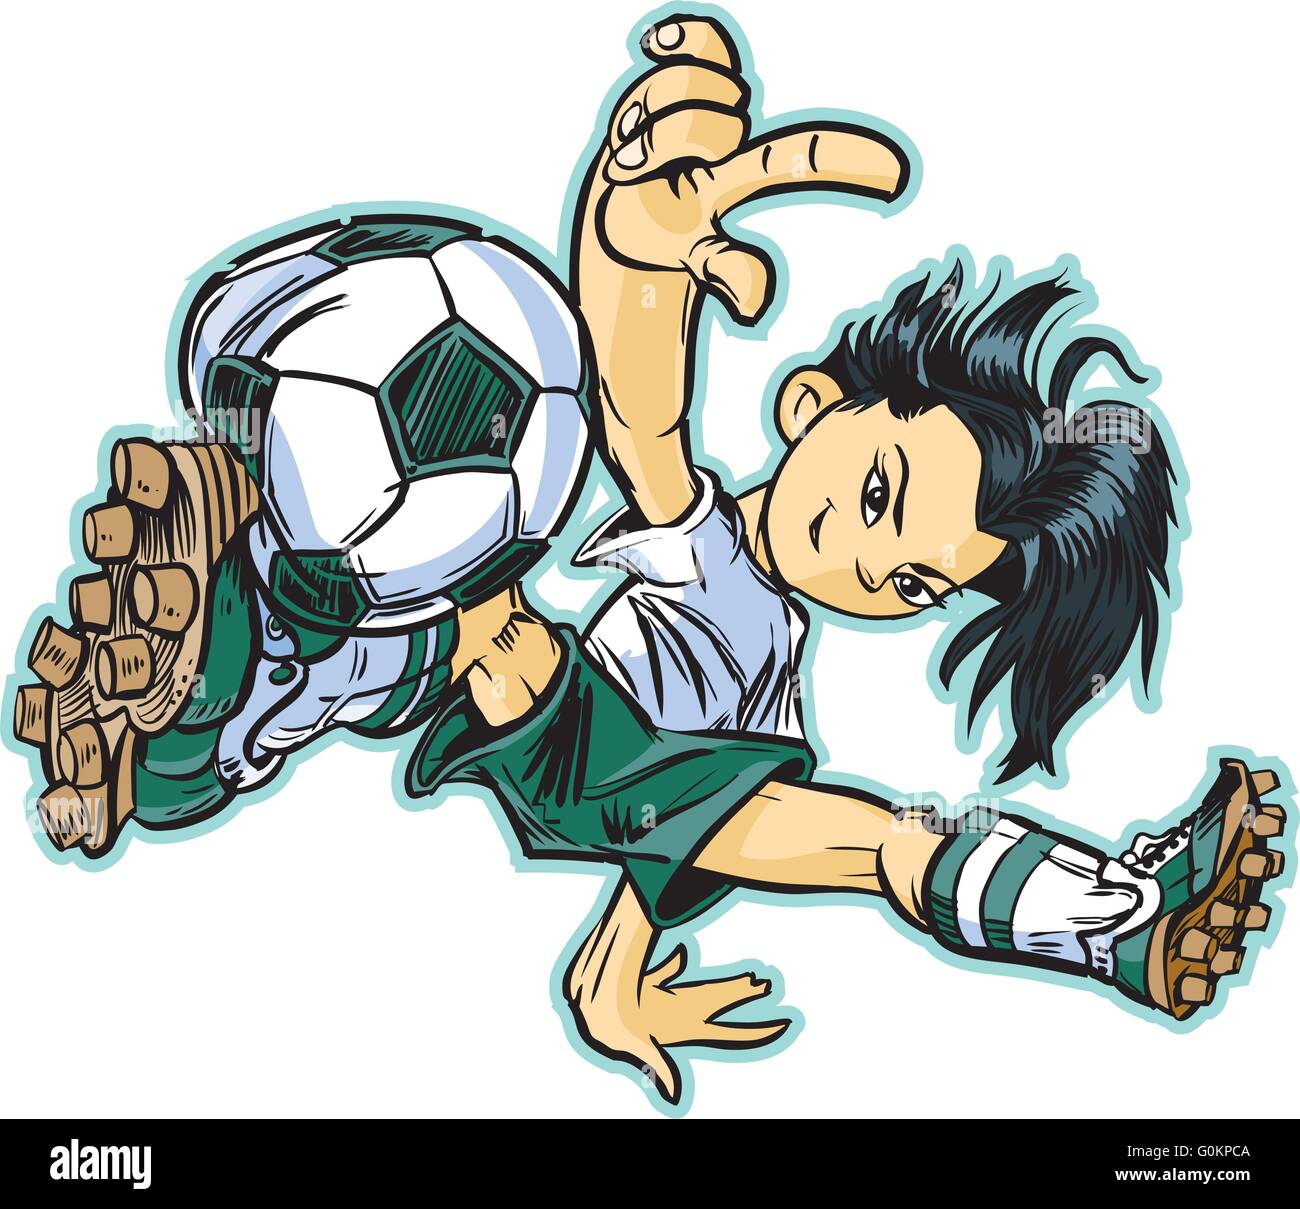 Vektor Clip Art Cartoon eines asiatischen Mädchens mit einem Breakdance bewegen, Fußball zu spielen. Stock Vektor